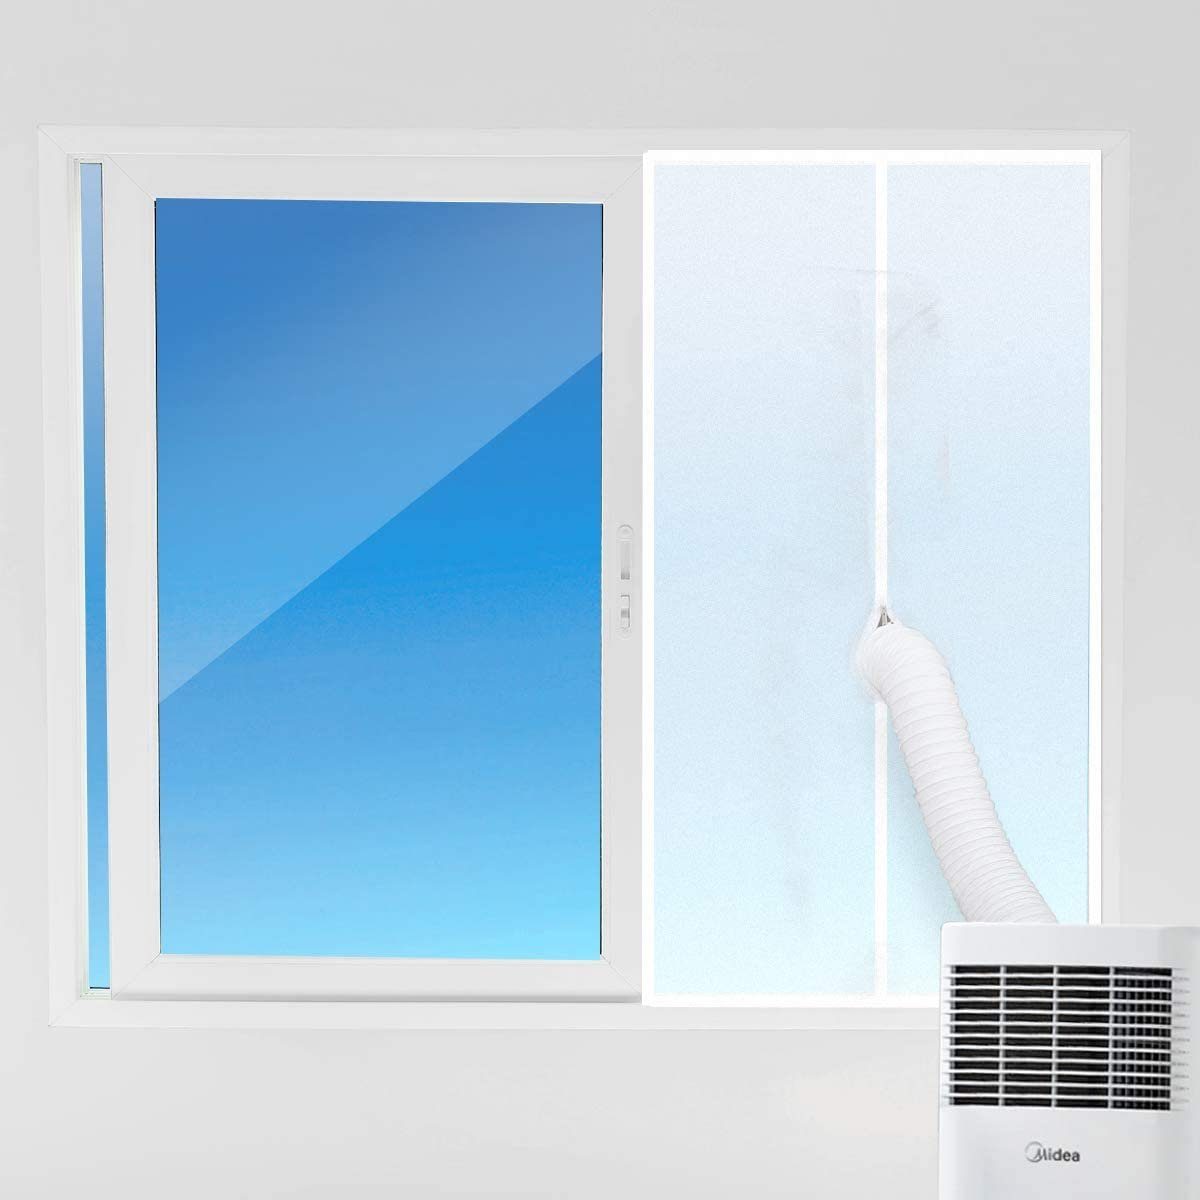 Fensterstopper für Windabweisend Sekey, Mobile Schiebefenster, Fensterabdichtung Hot Air Stop Klimageräte, Wäschetrockner für Wasserdicht, Anti-Mücken,